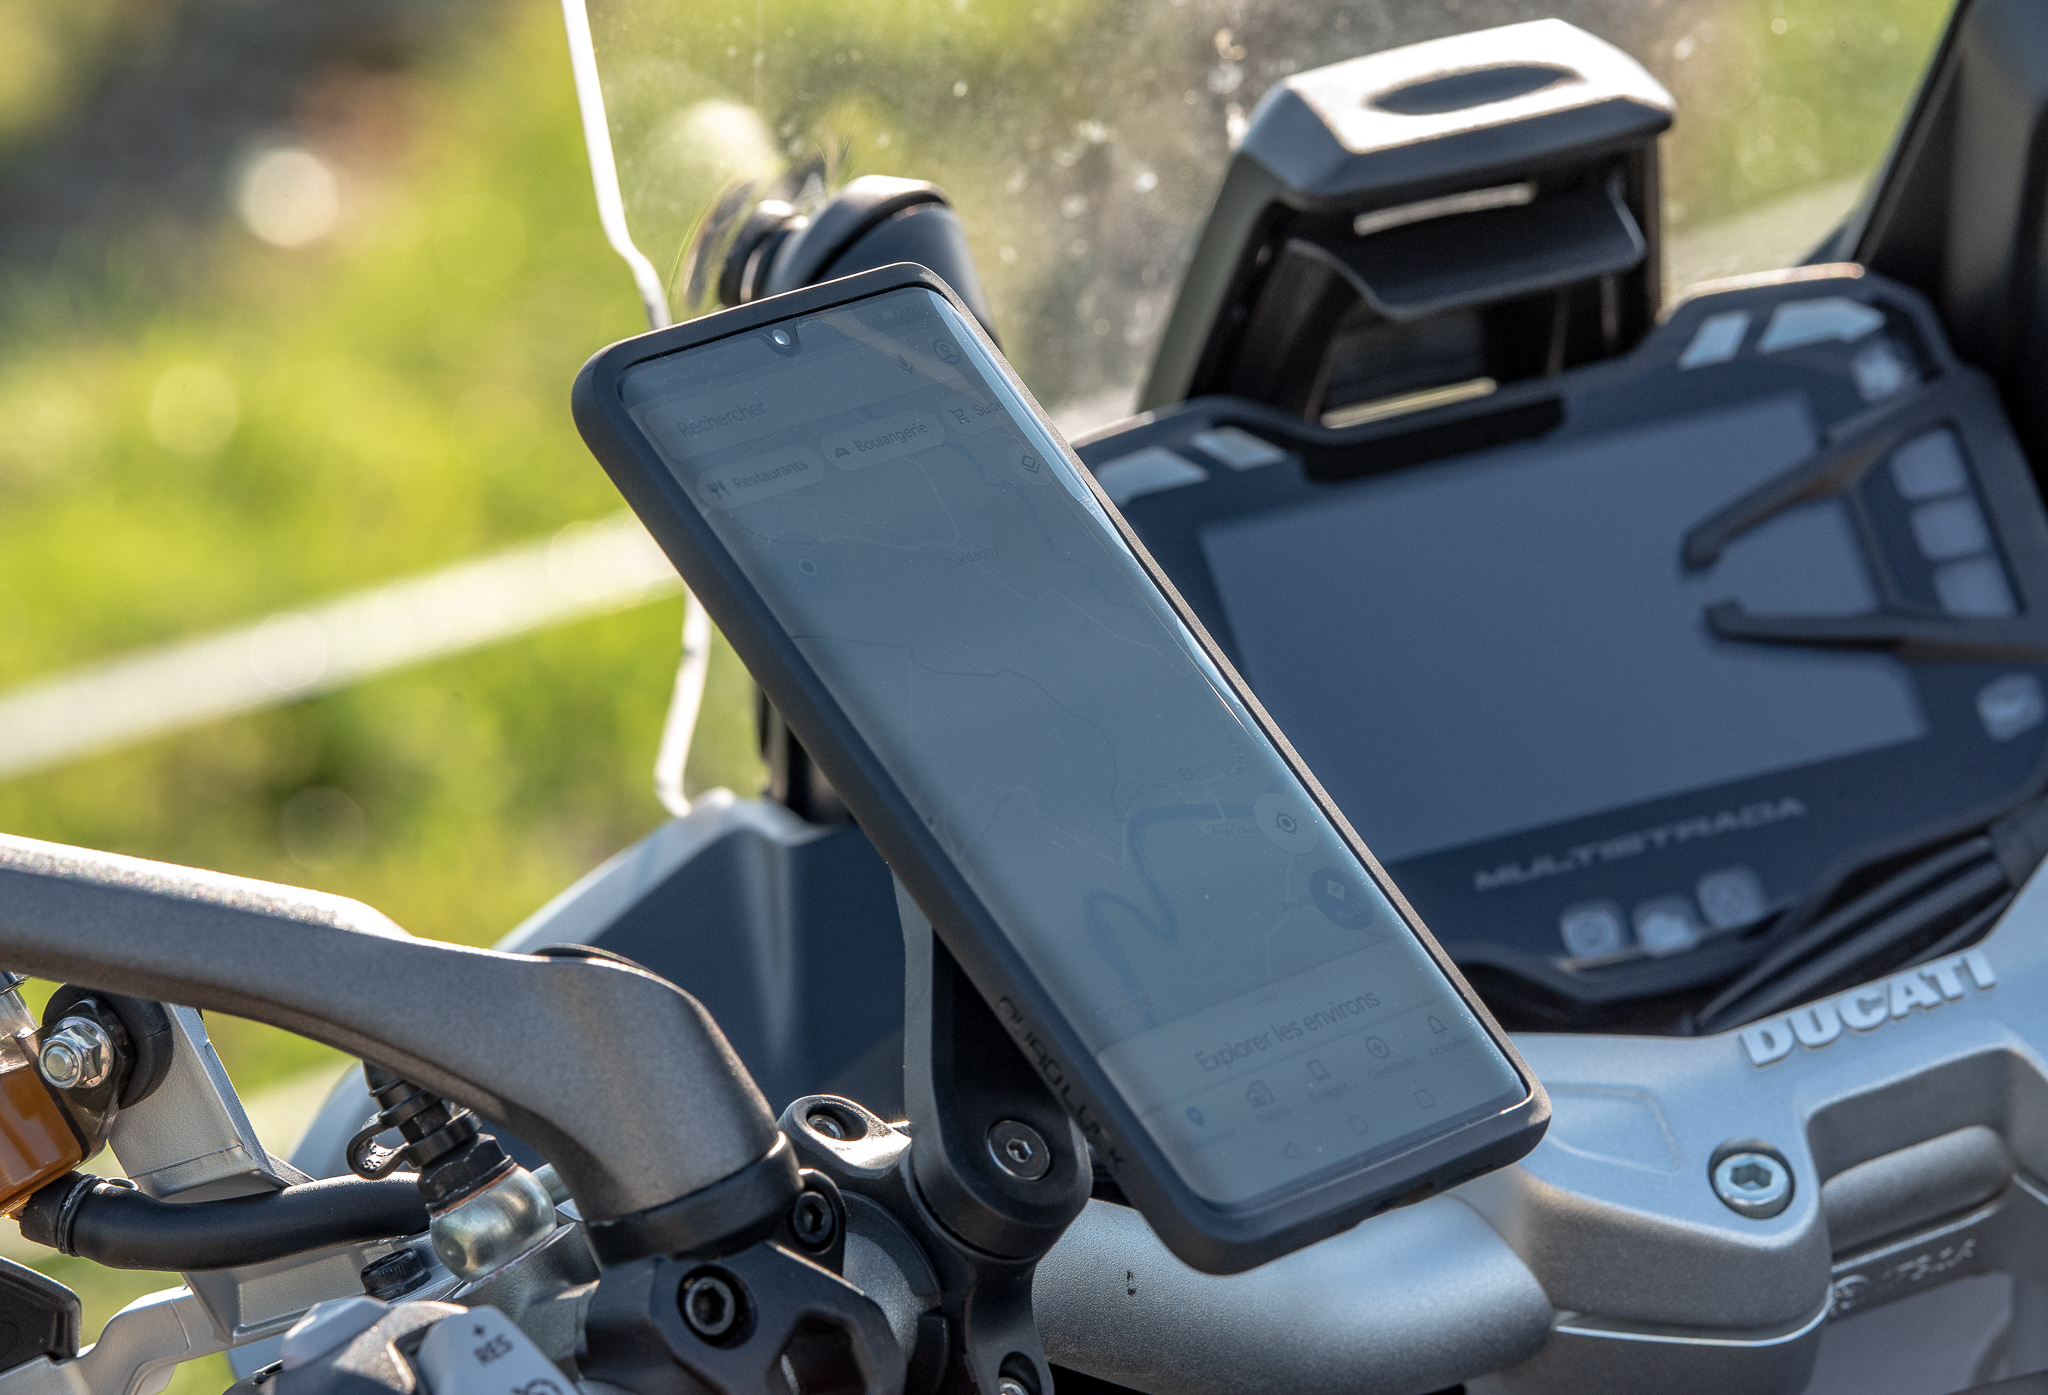 Test du système Quad Lock – et si le meilleur GPS moto était votre